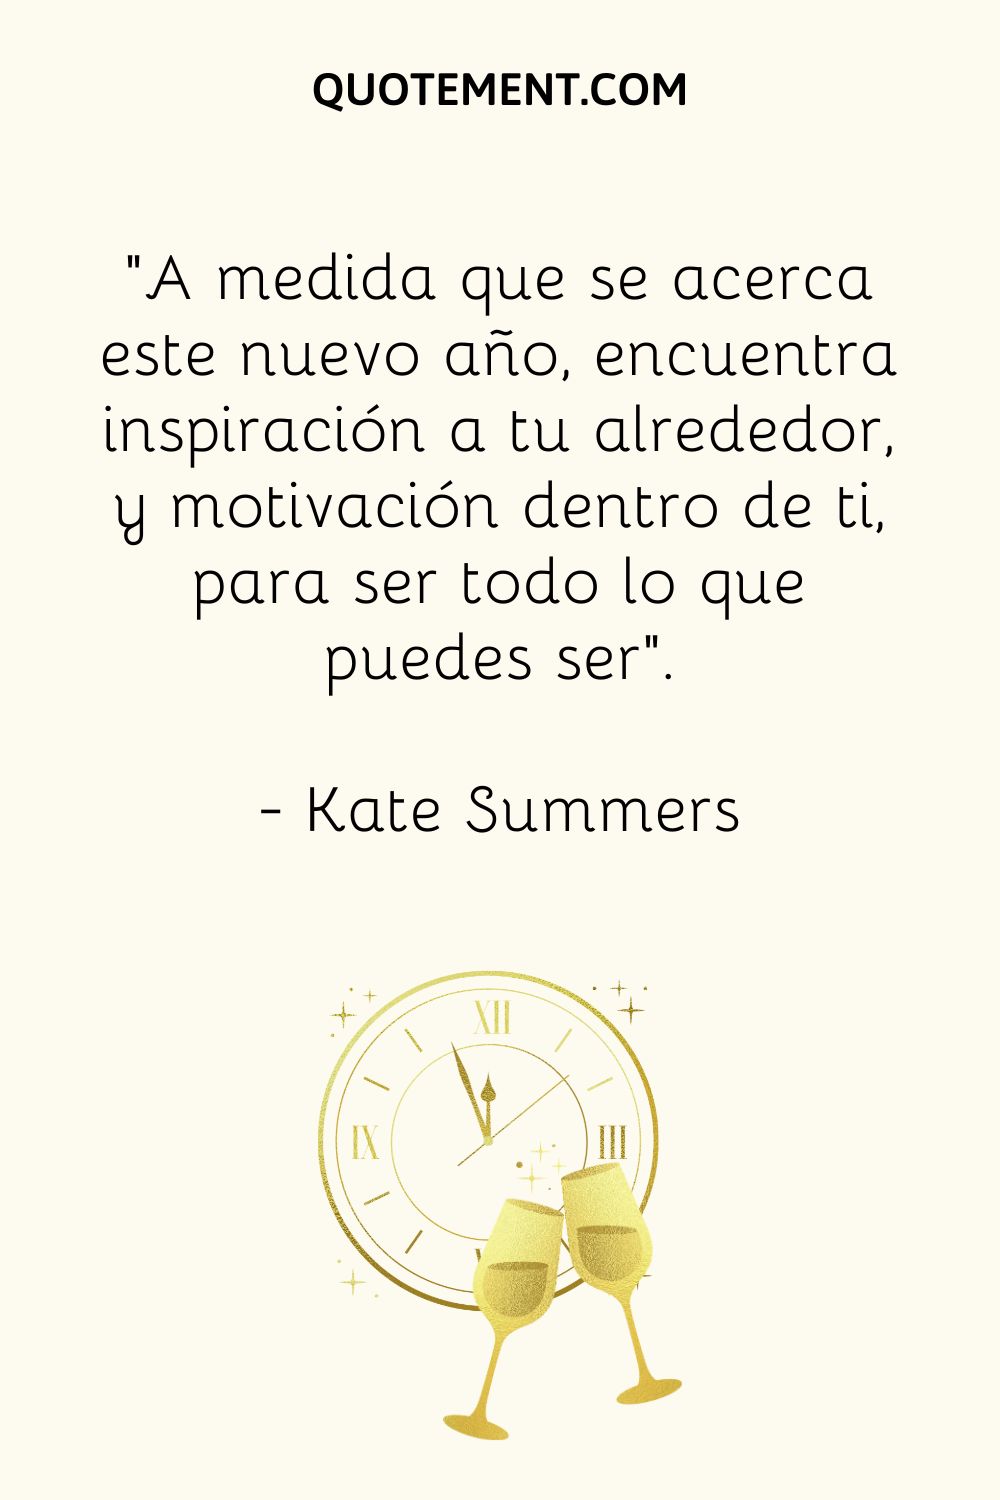 "A medida que se acerca este nuevo año, encuentra inspiración a tu alrededor, y motivación en tu interior, para ser todo lo que puedes ser". - Kate Summers